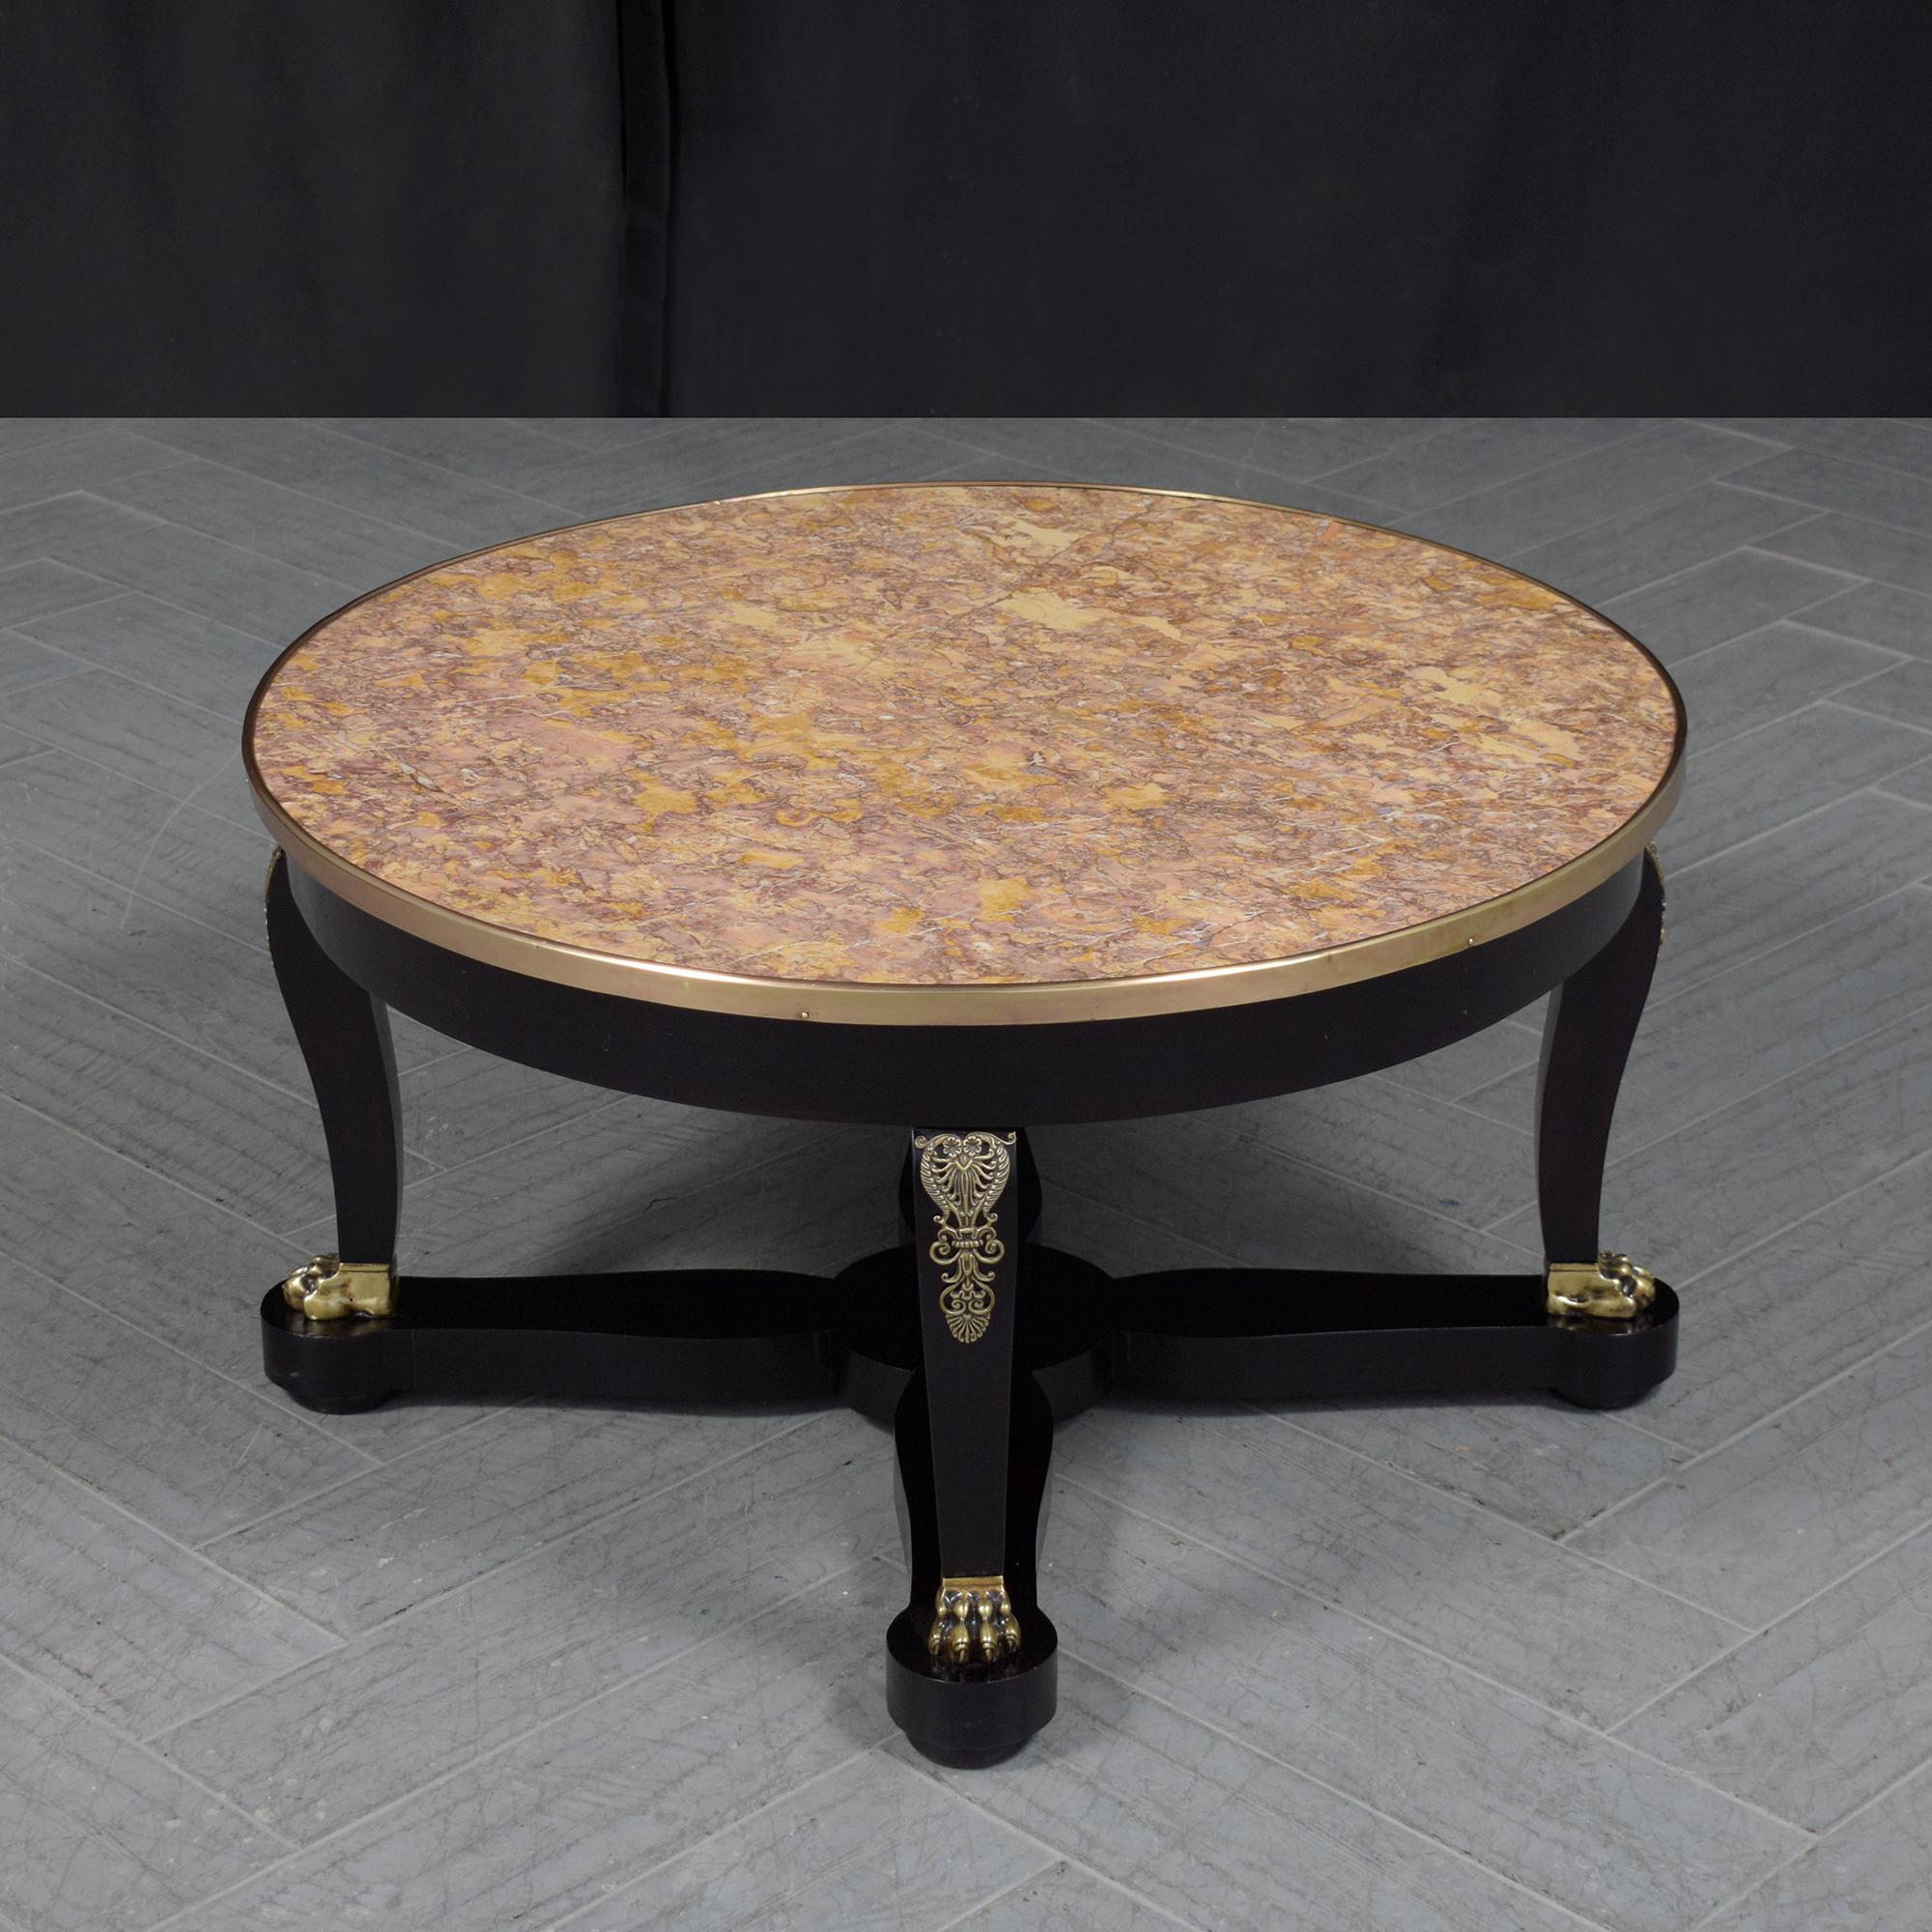 Découvrez la grandeur des années 1880 avec notre exquise table basse ancienne, qui témoigne du somptueux artisanat de style Empire. Restaurée de manière experte par nos artisans chevronnés, cette pièce se tient en parfait état, prête à ajouter une